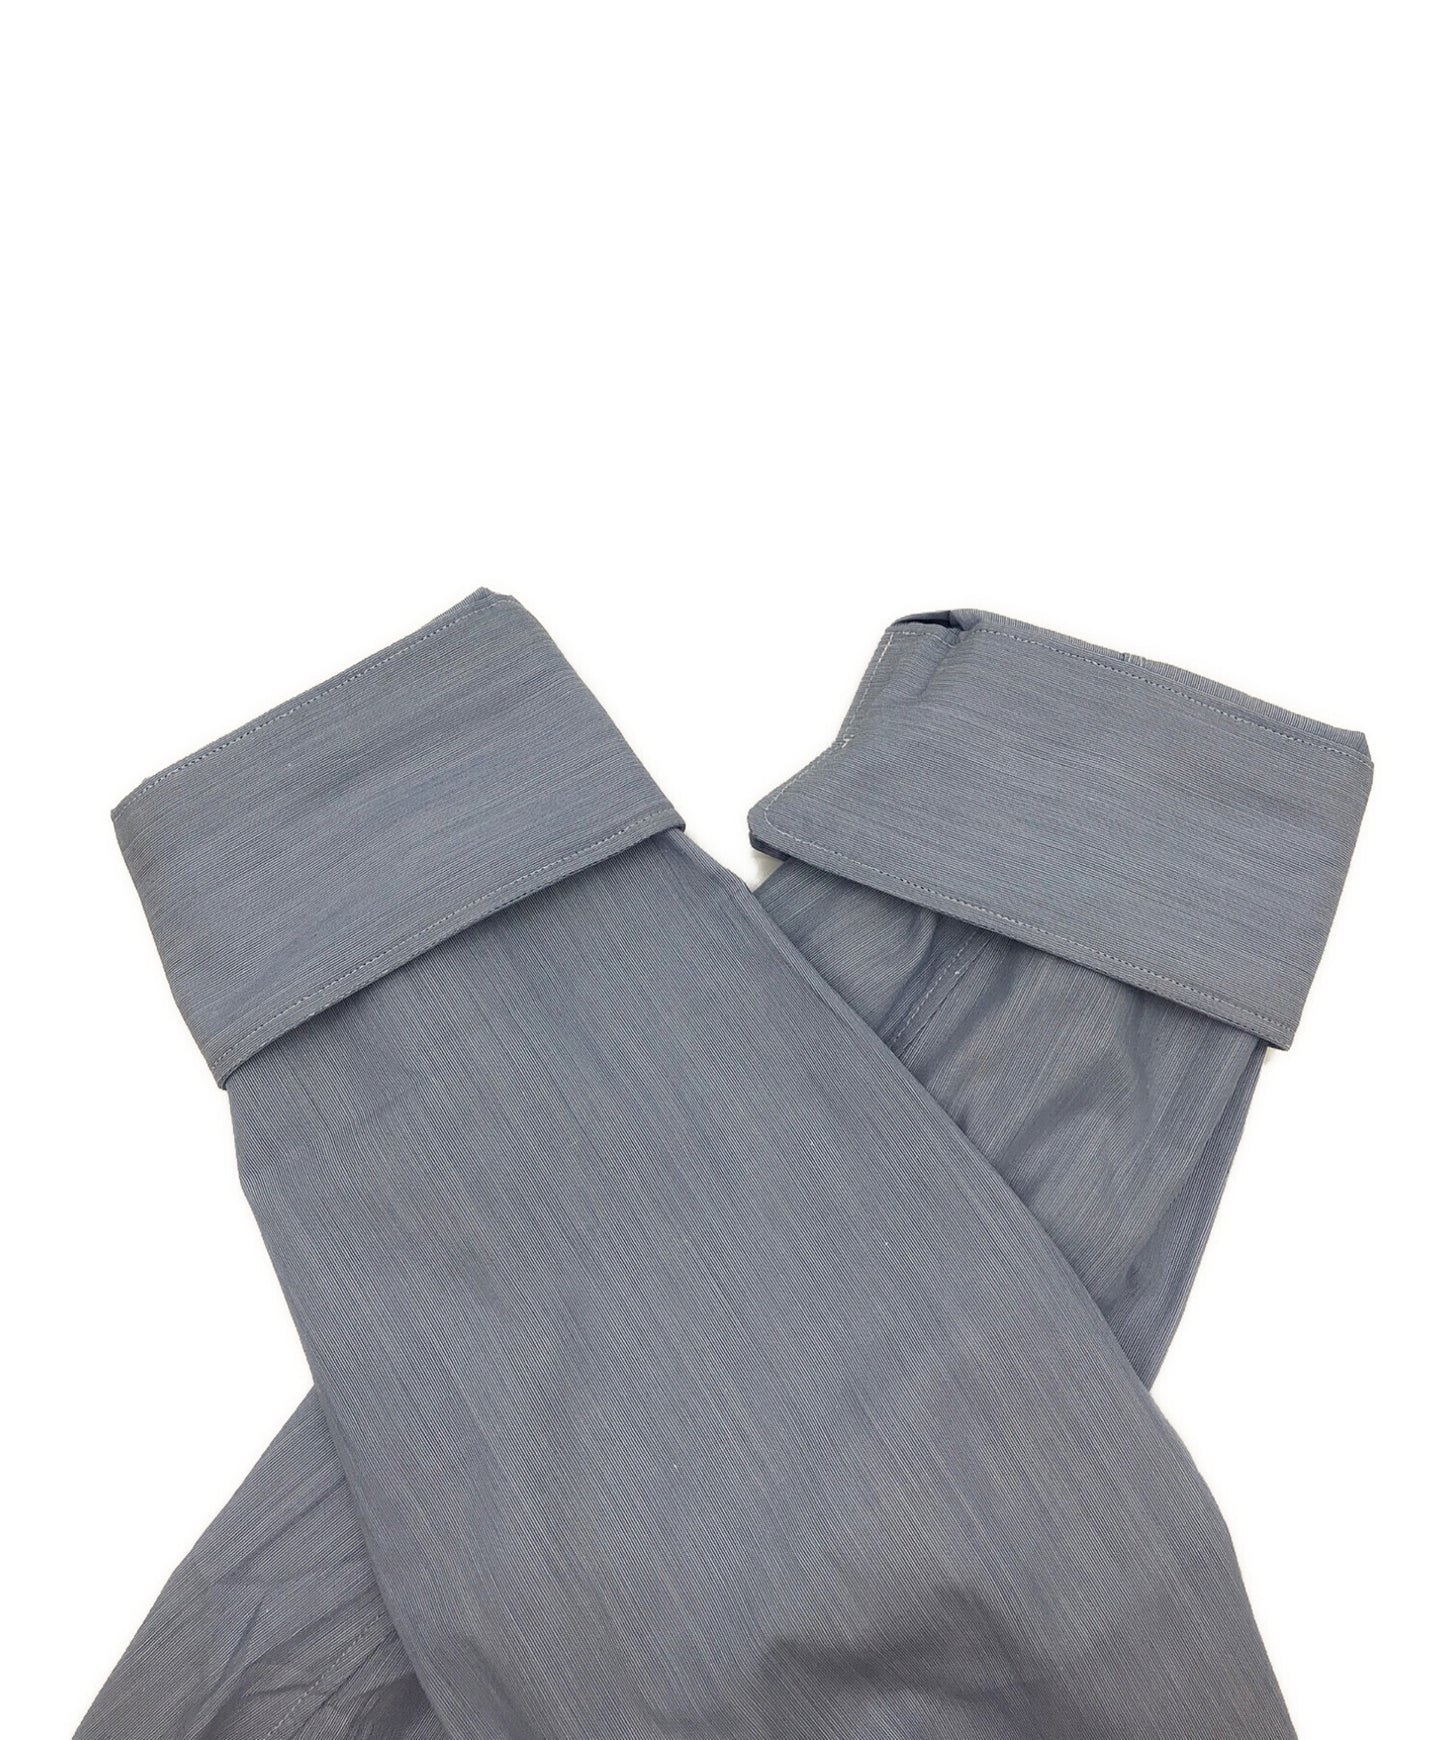 [Pre-owned] COMME des GARCONS HOMME DEUX Mixed stripe shirt Patchwork shirt DK-B021